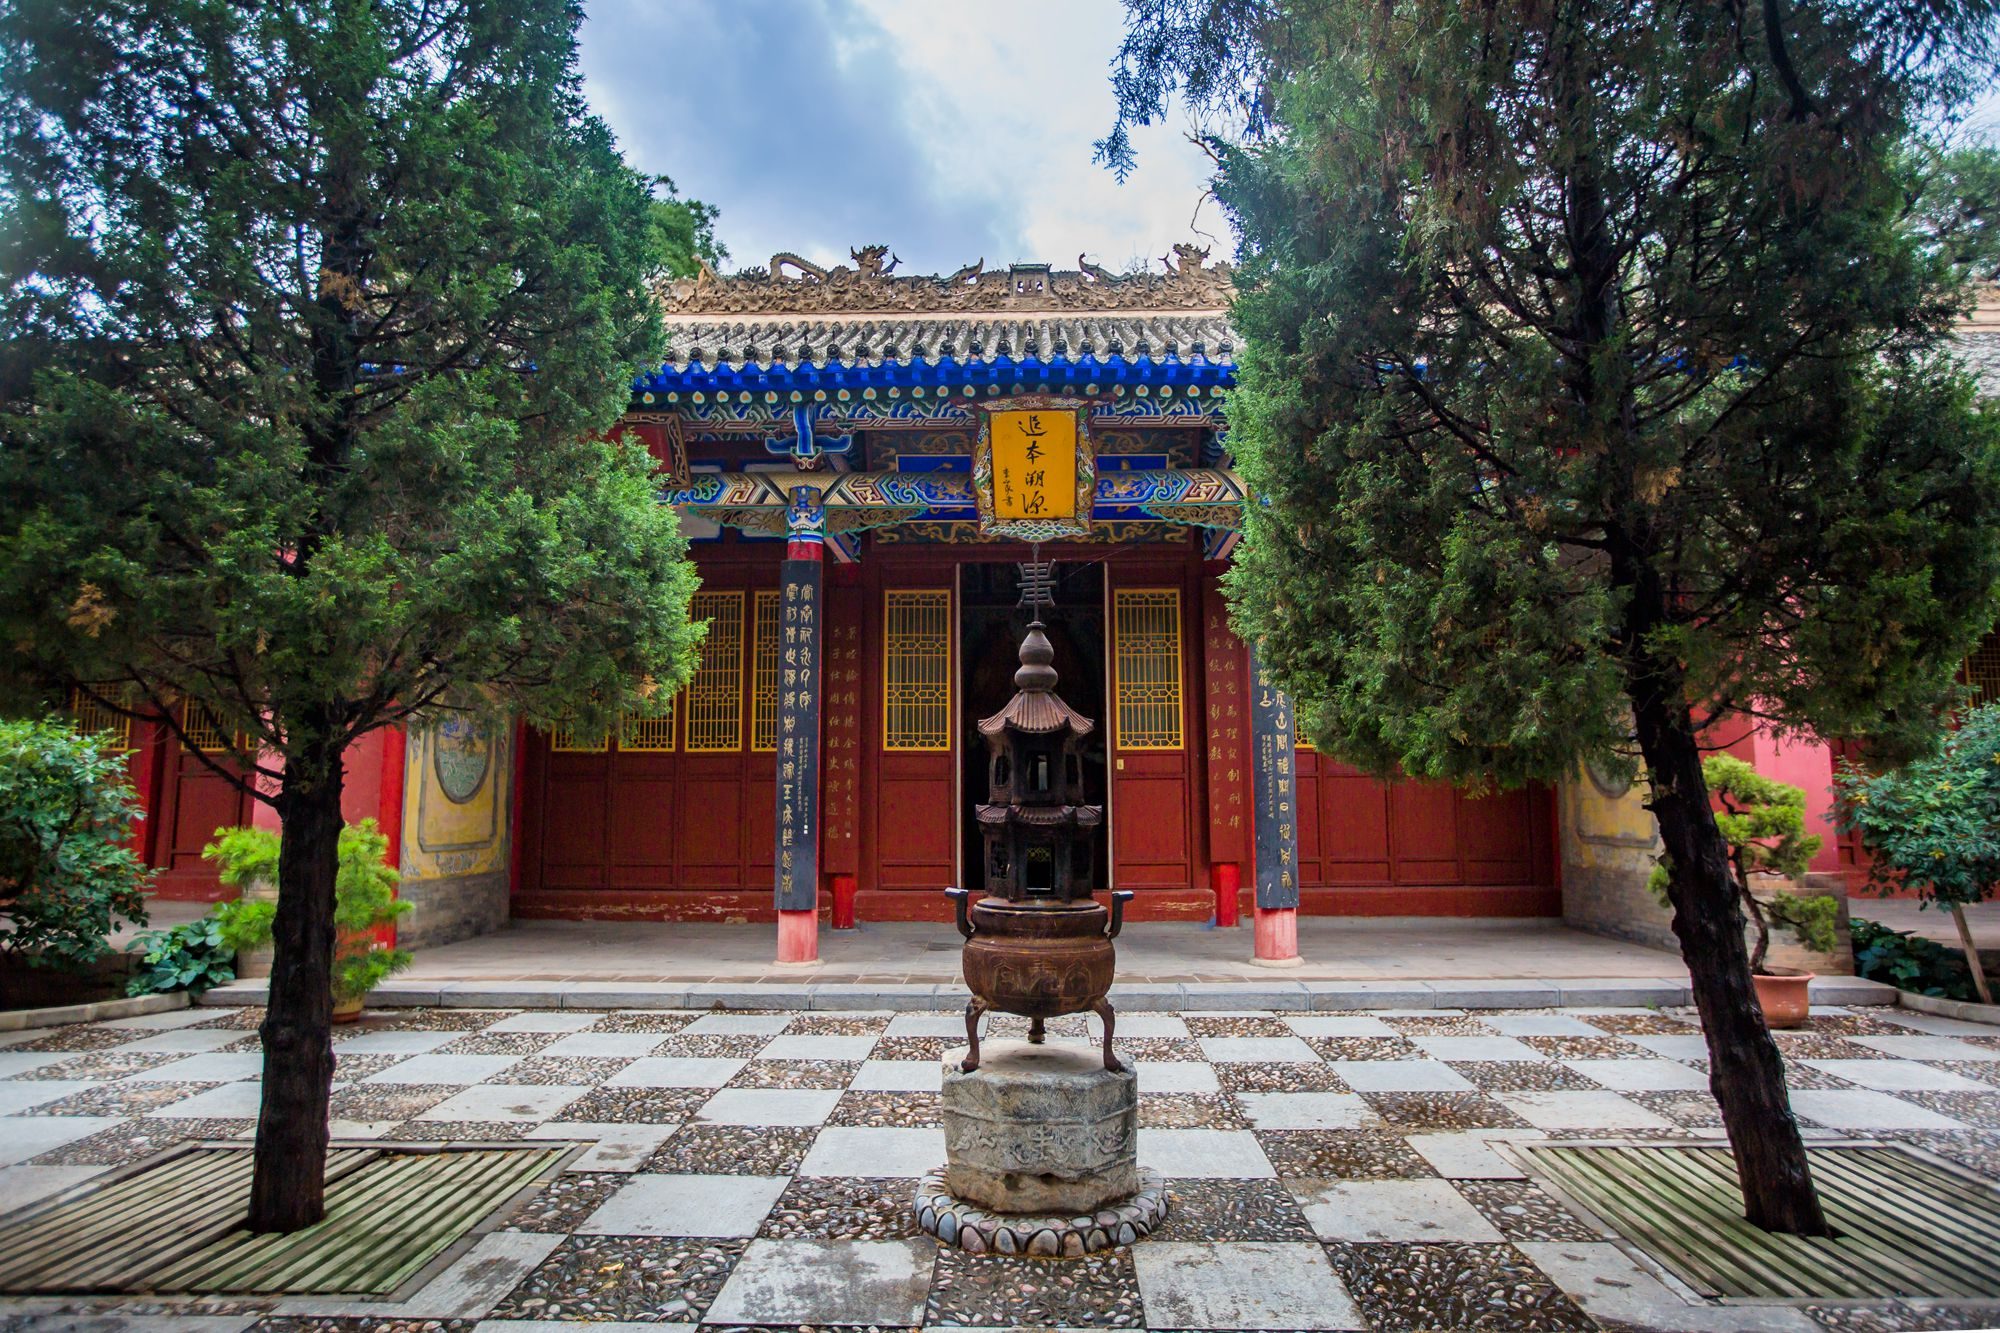 甘肃陇西有一座李家龙宫,历经1400多年历史,全球李氏都在此祭拜